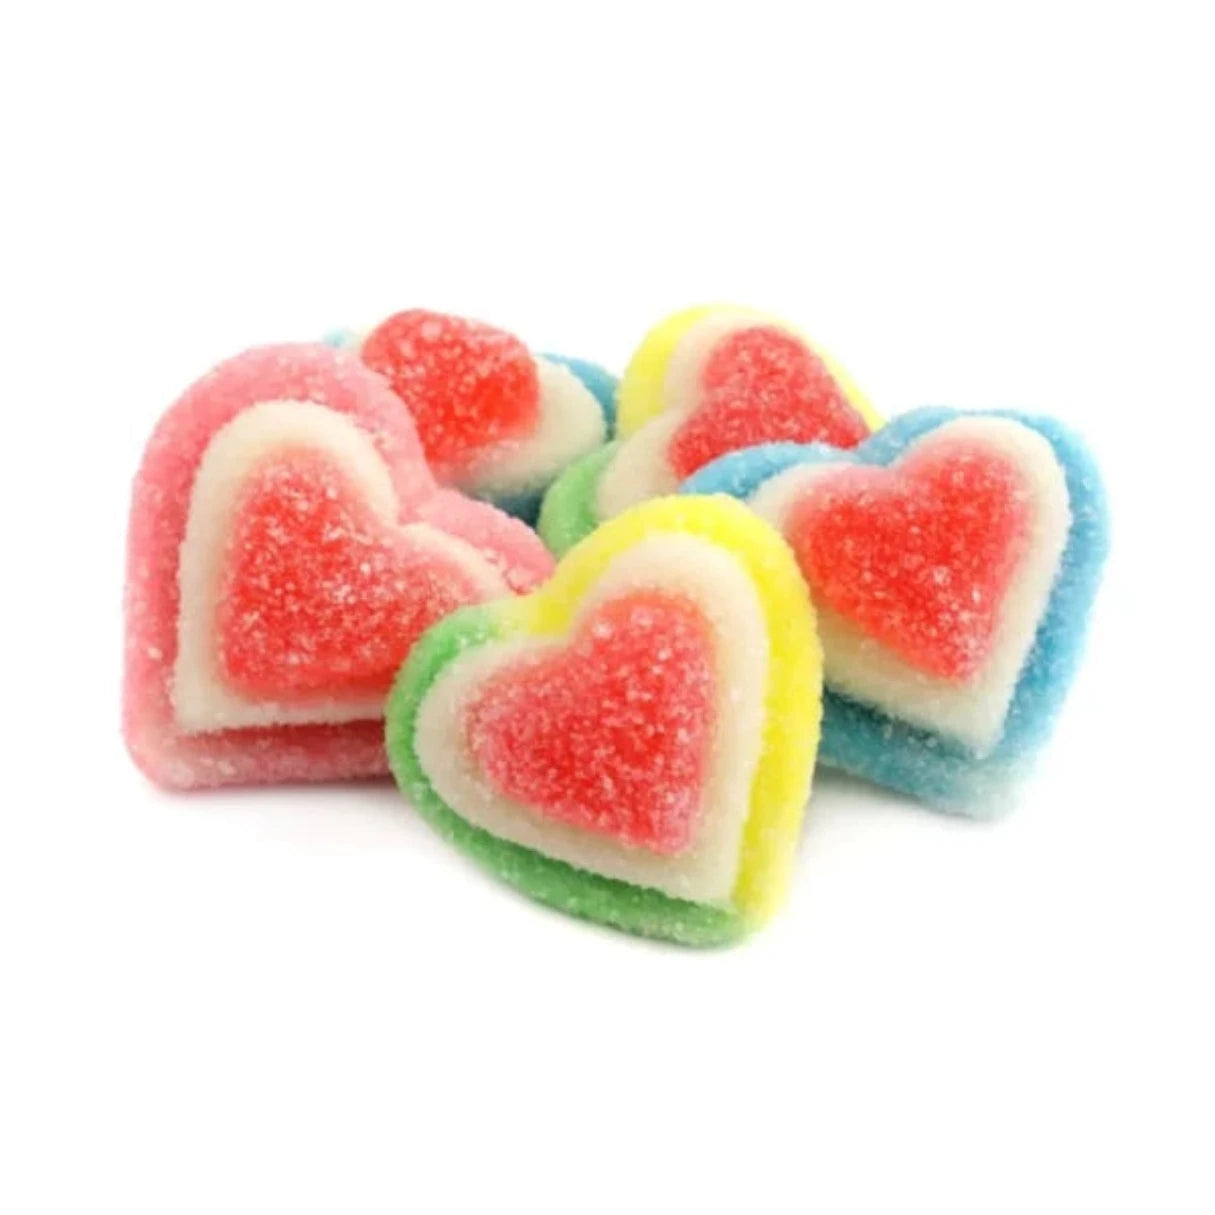 Vidal Gummi Hearts Sugared Assorted Colors Bag 4.4lb - 1ct